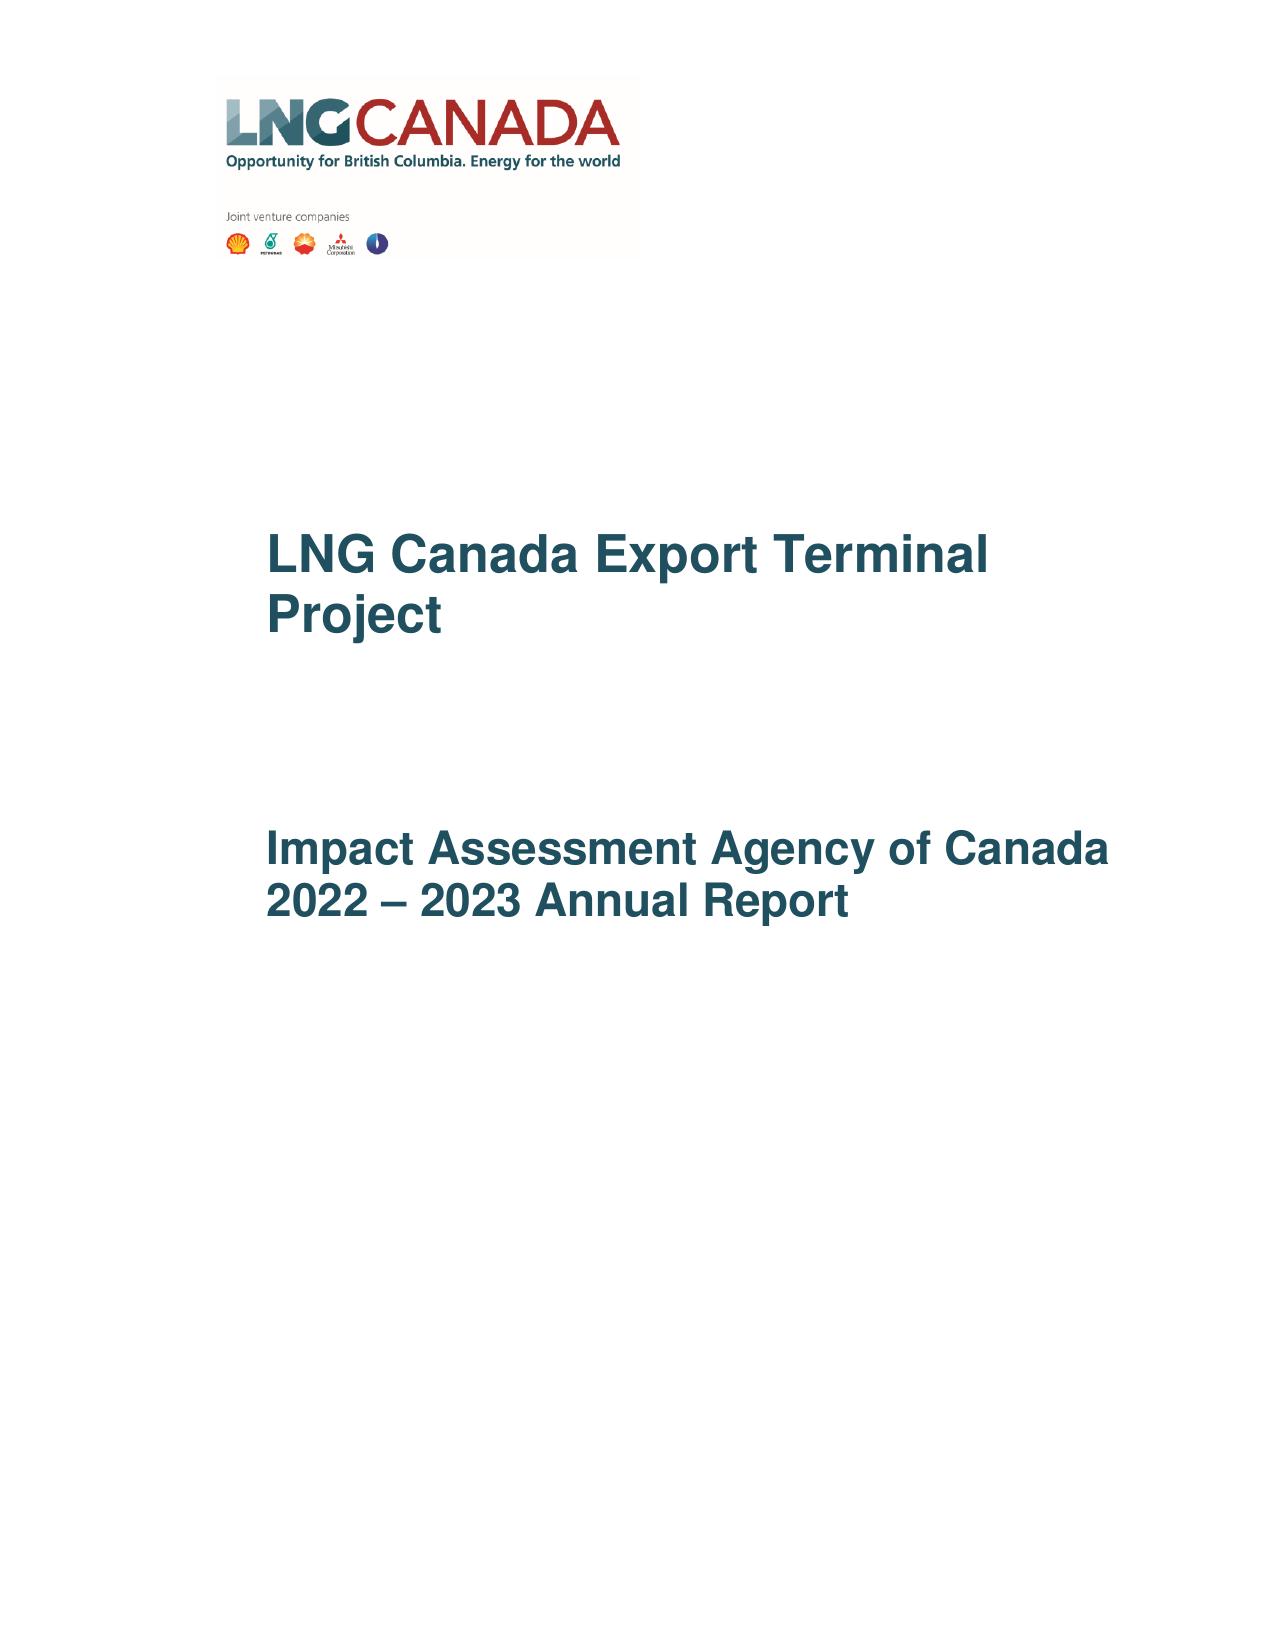 LNGCANADA 2023 Annual Report